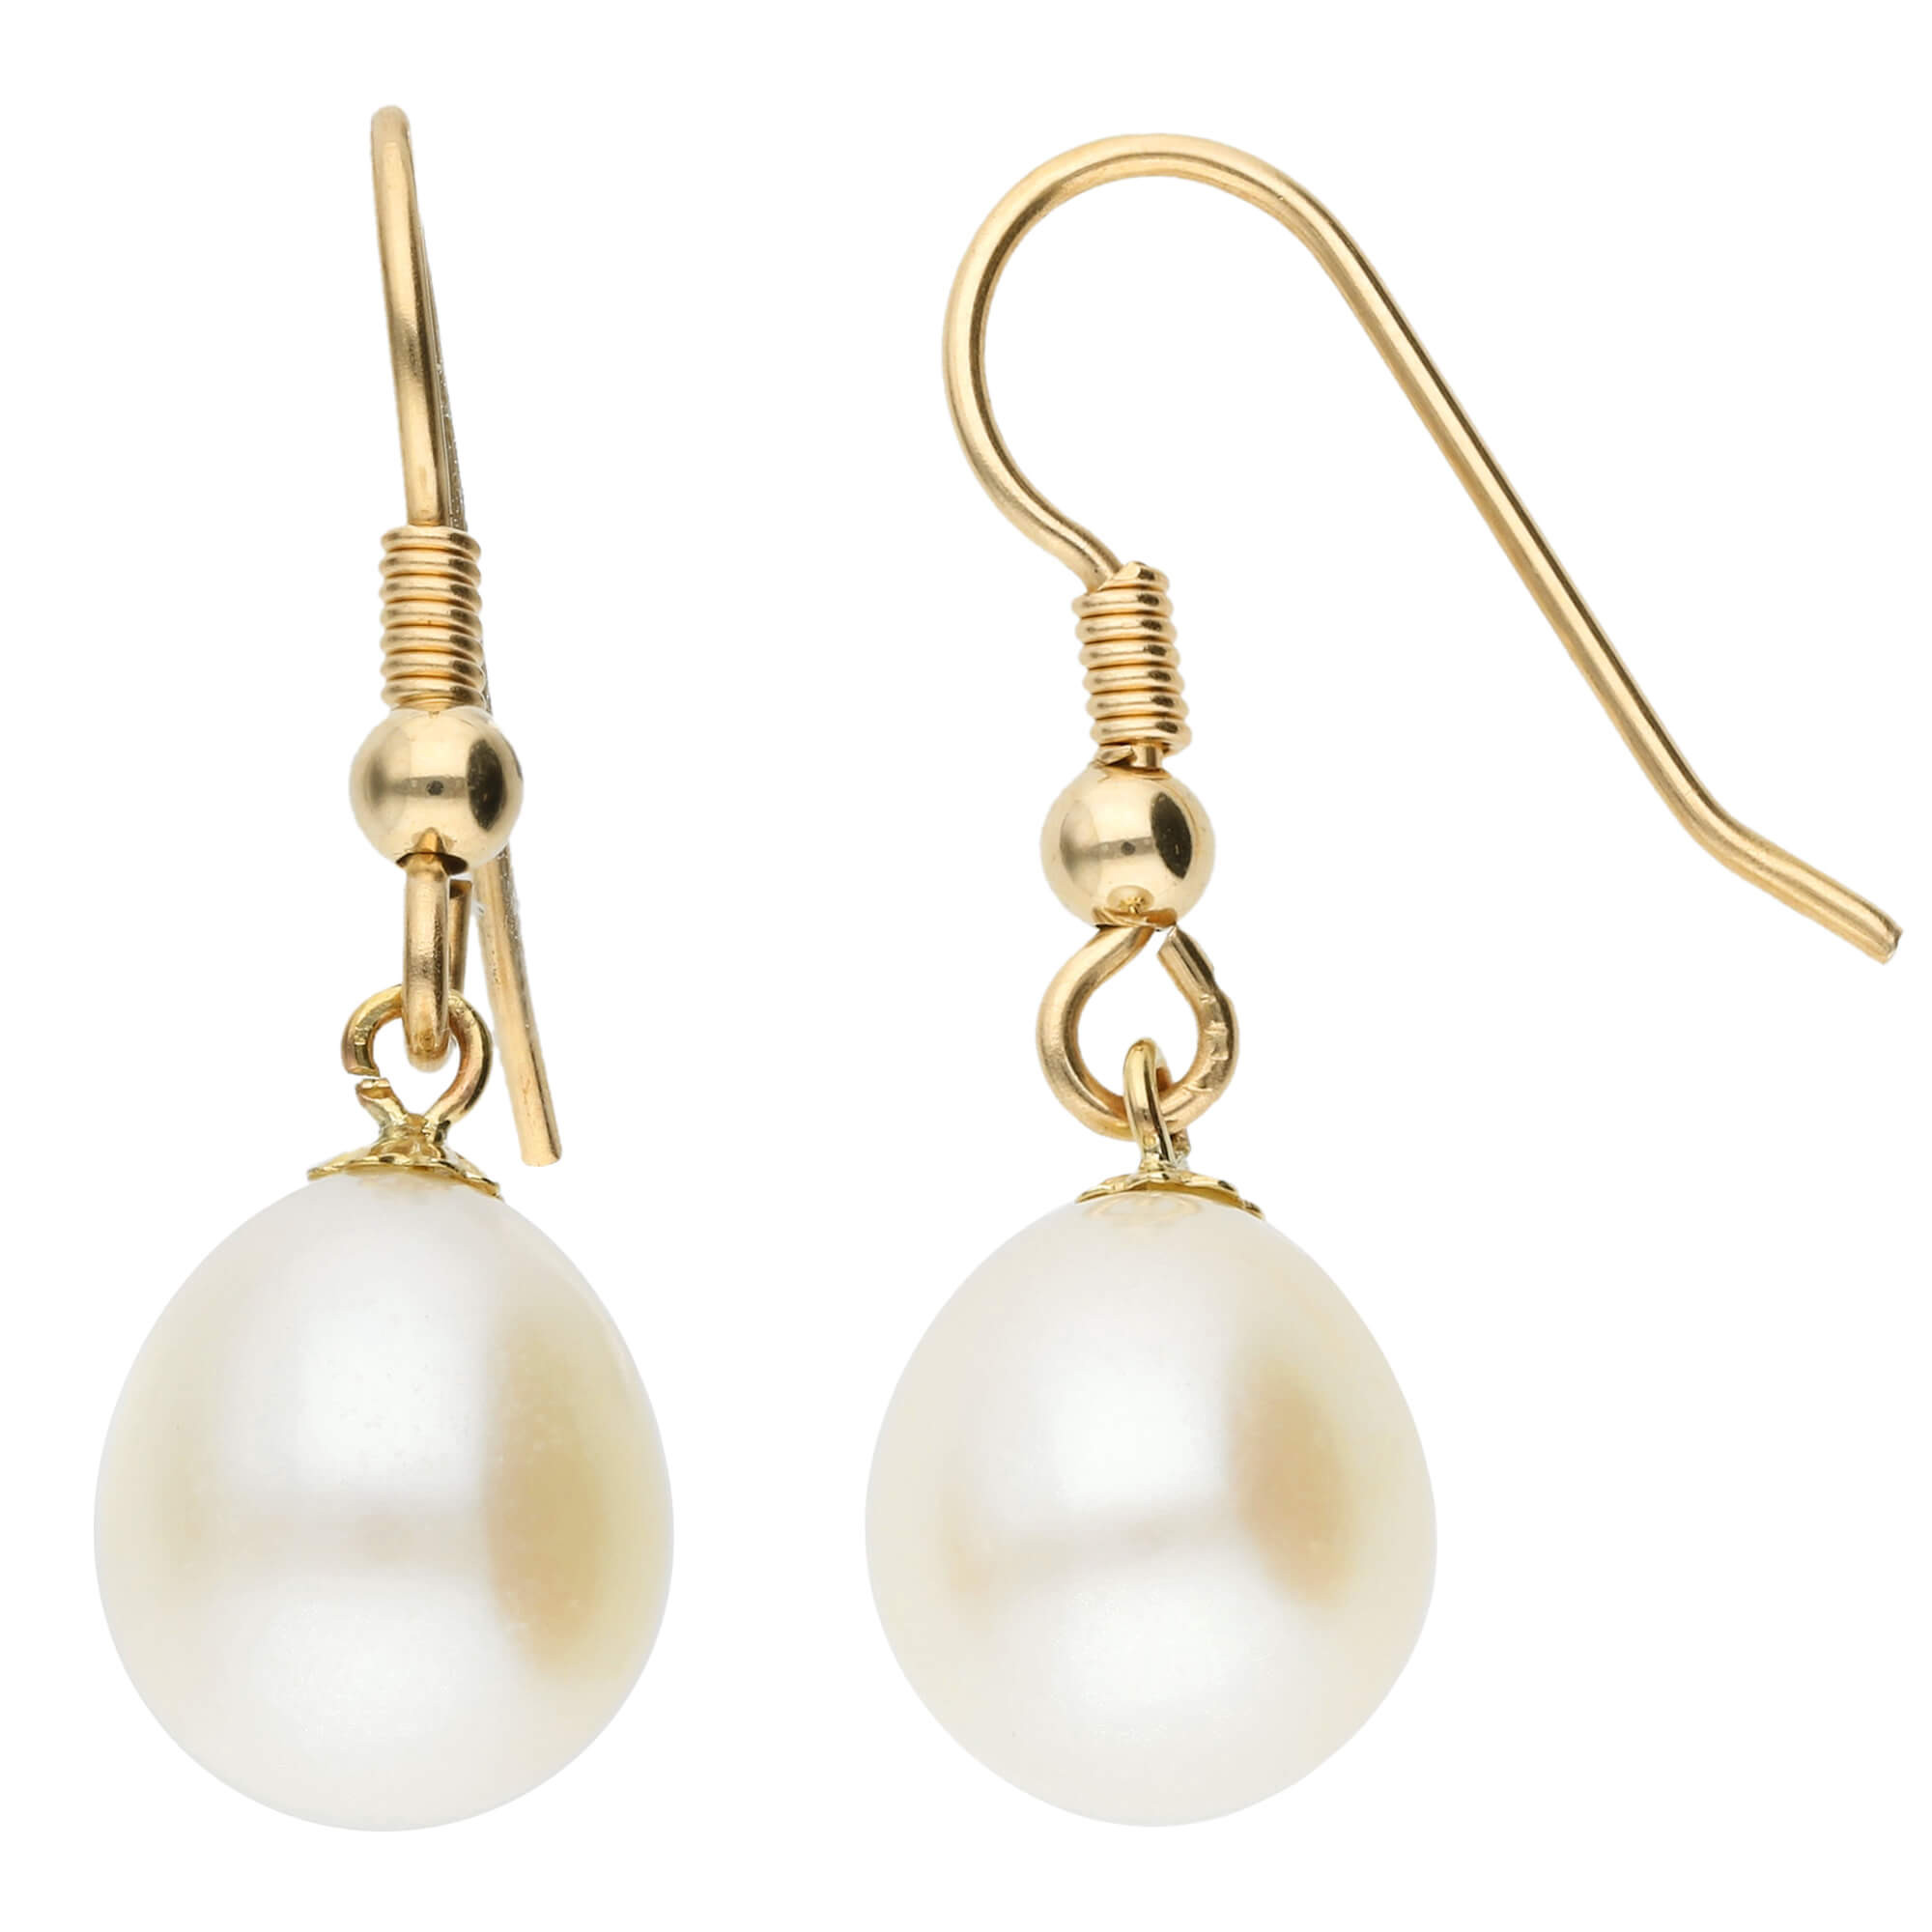 Faux pearl earrings - Women's fashion | Stradivarius Spain